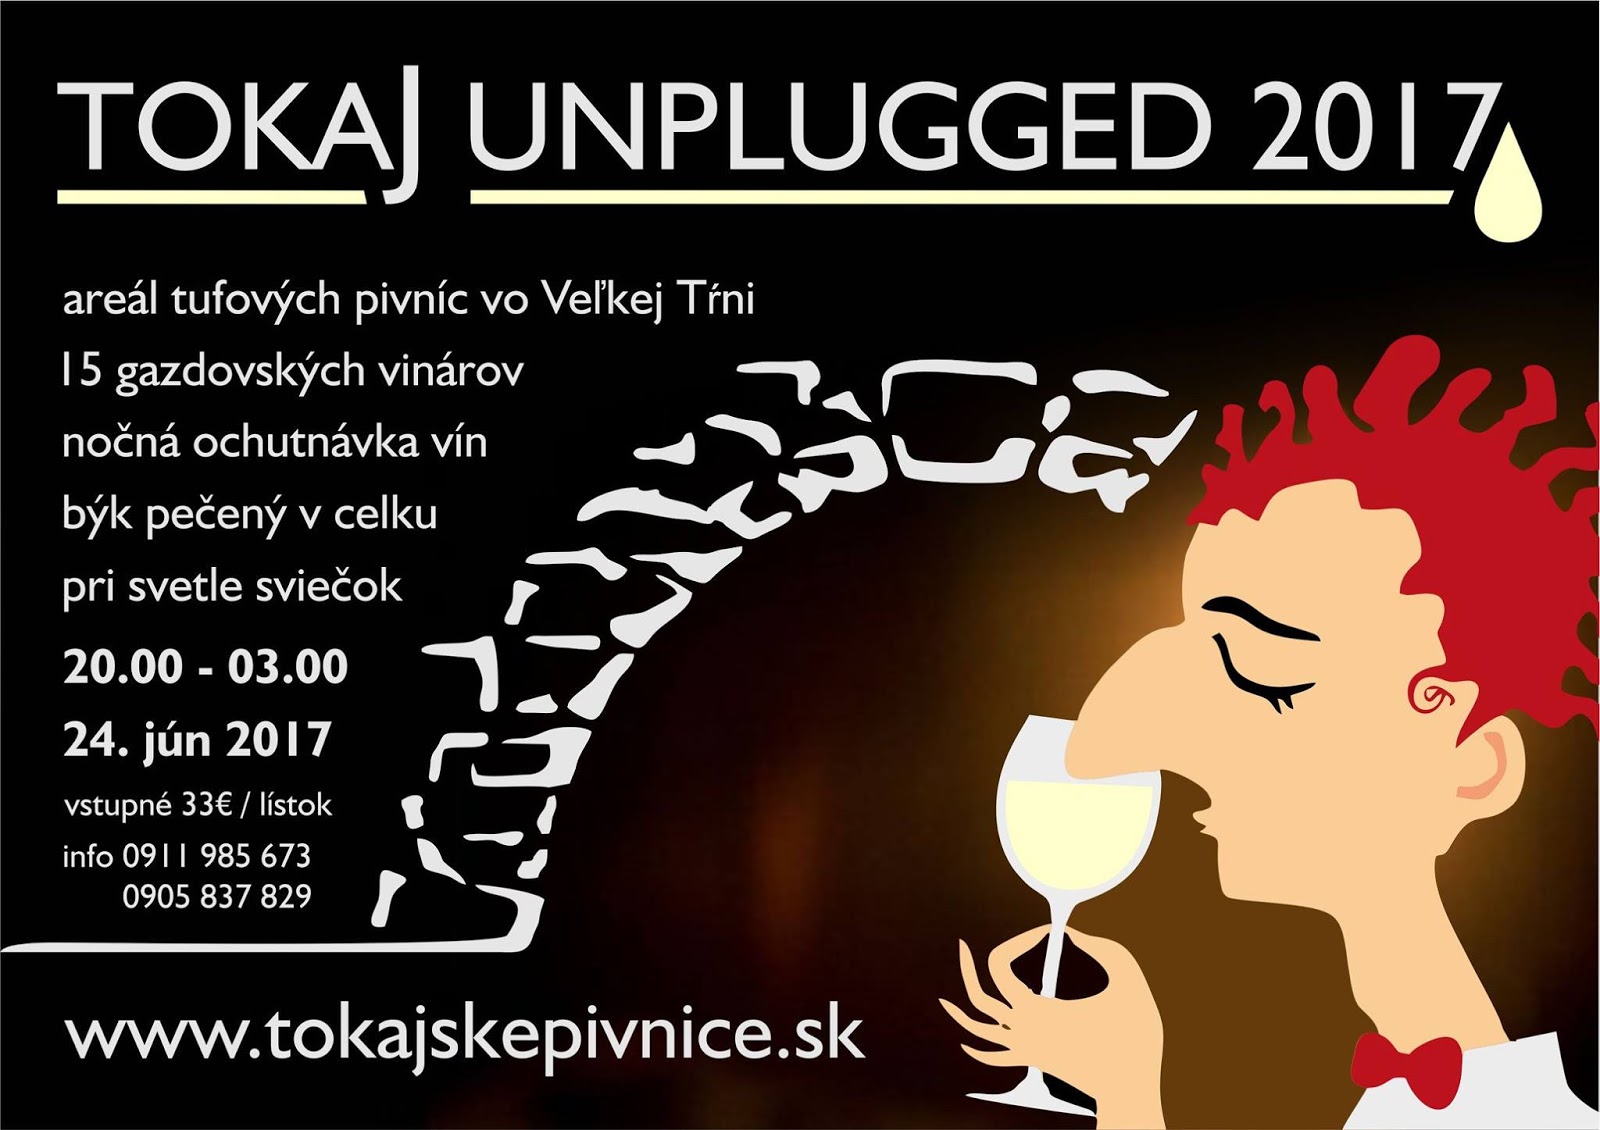 Tokaj unplugged vo Vekej Tni 2017  4. ronk